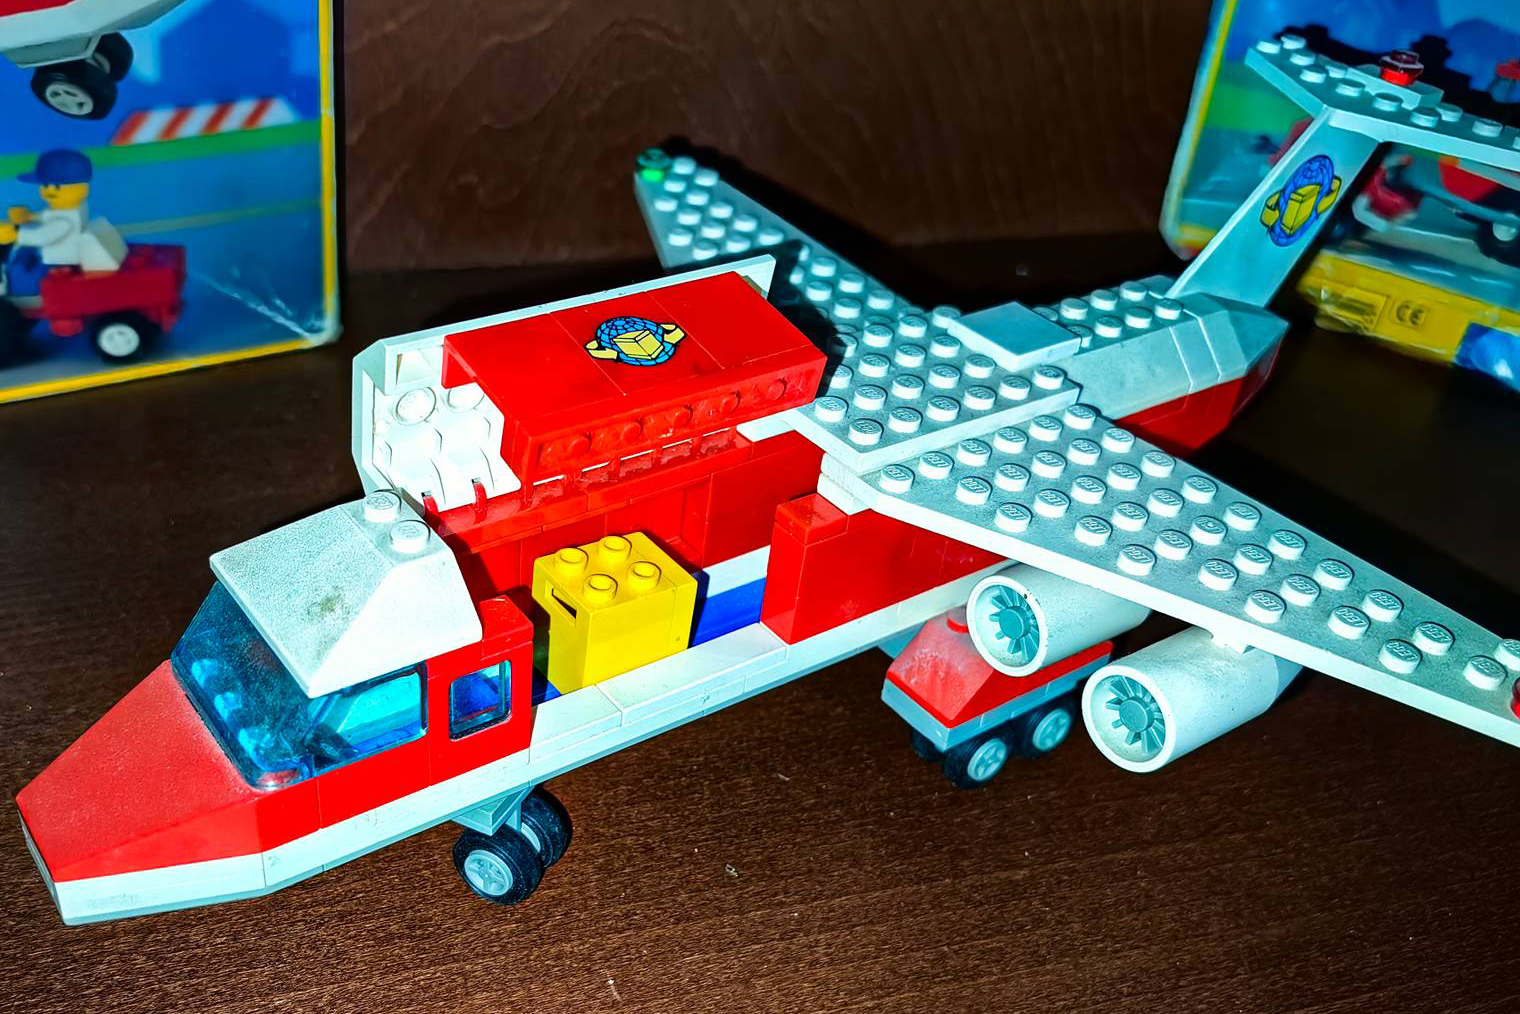 Долгое время этот и несколько последующих наборов «Лего» были моими любимыми игрушками. А через несколько лет их полюбил и мой младший брат